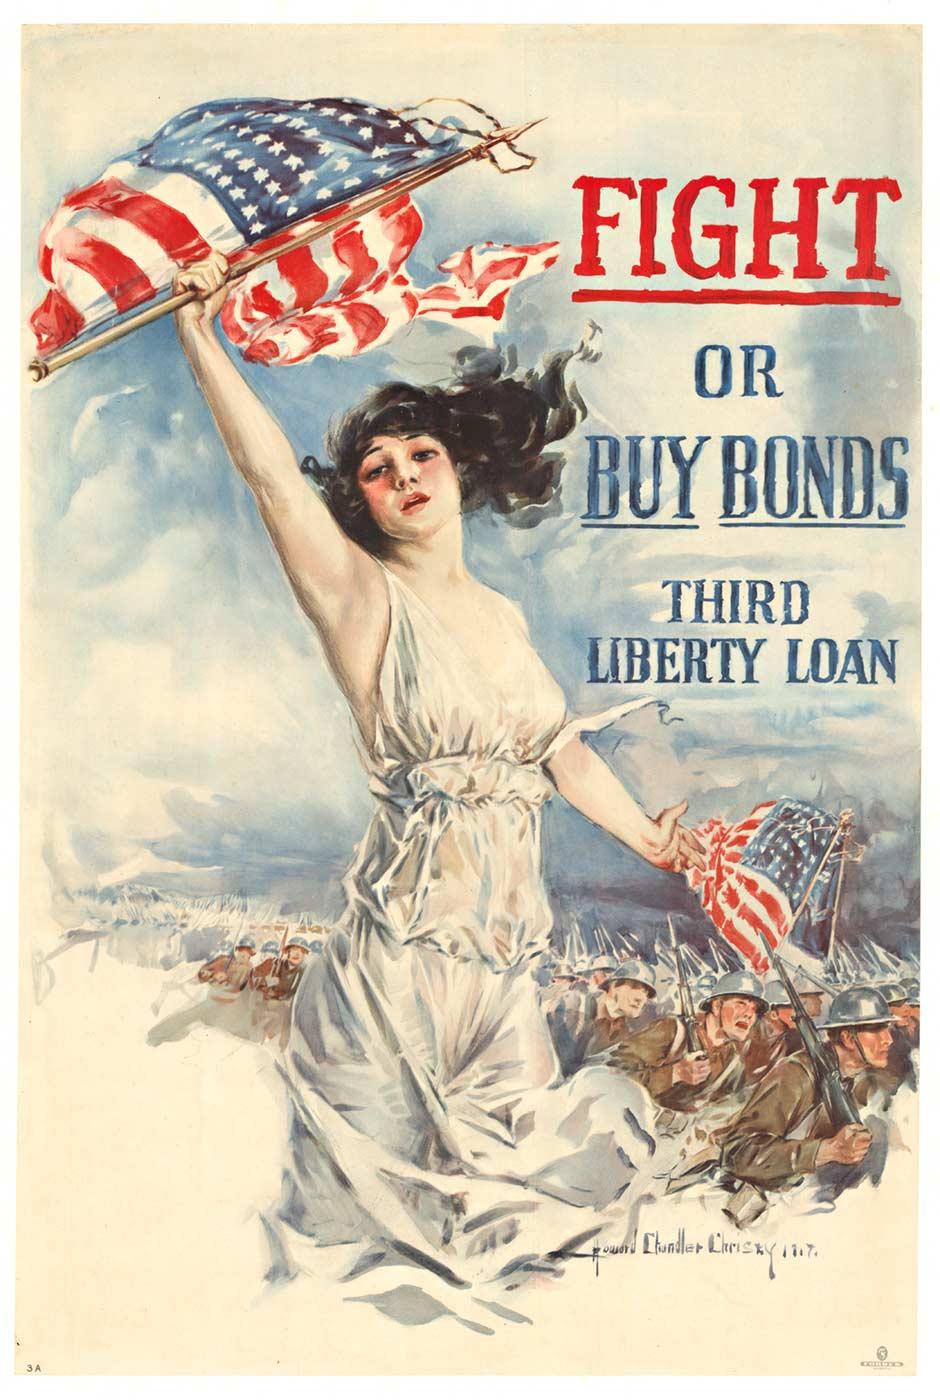 Howard Chandler Christy Landscape Print - Original "Fight or Buy Bonds, Third Liberty Loan" vintage poster  1917